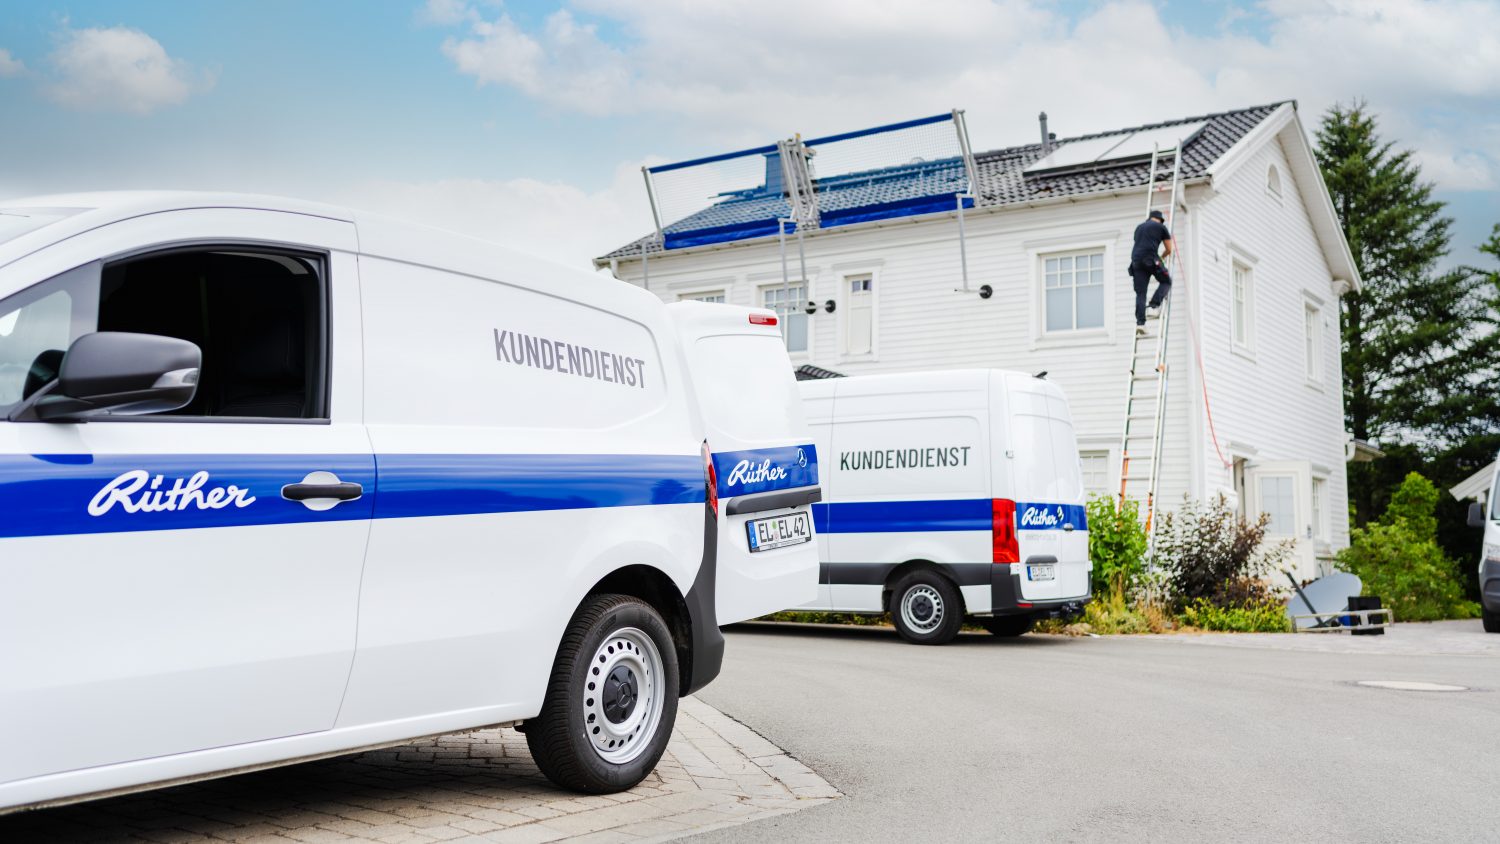 Kundendienst Fahrzeuge vor Gebäude bei Installation und Montage einer Photovoltaik PV-Anlage in Papenburg, Emsland, Ostfriesland